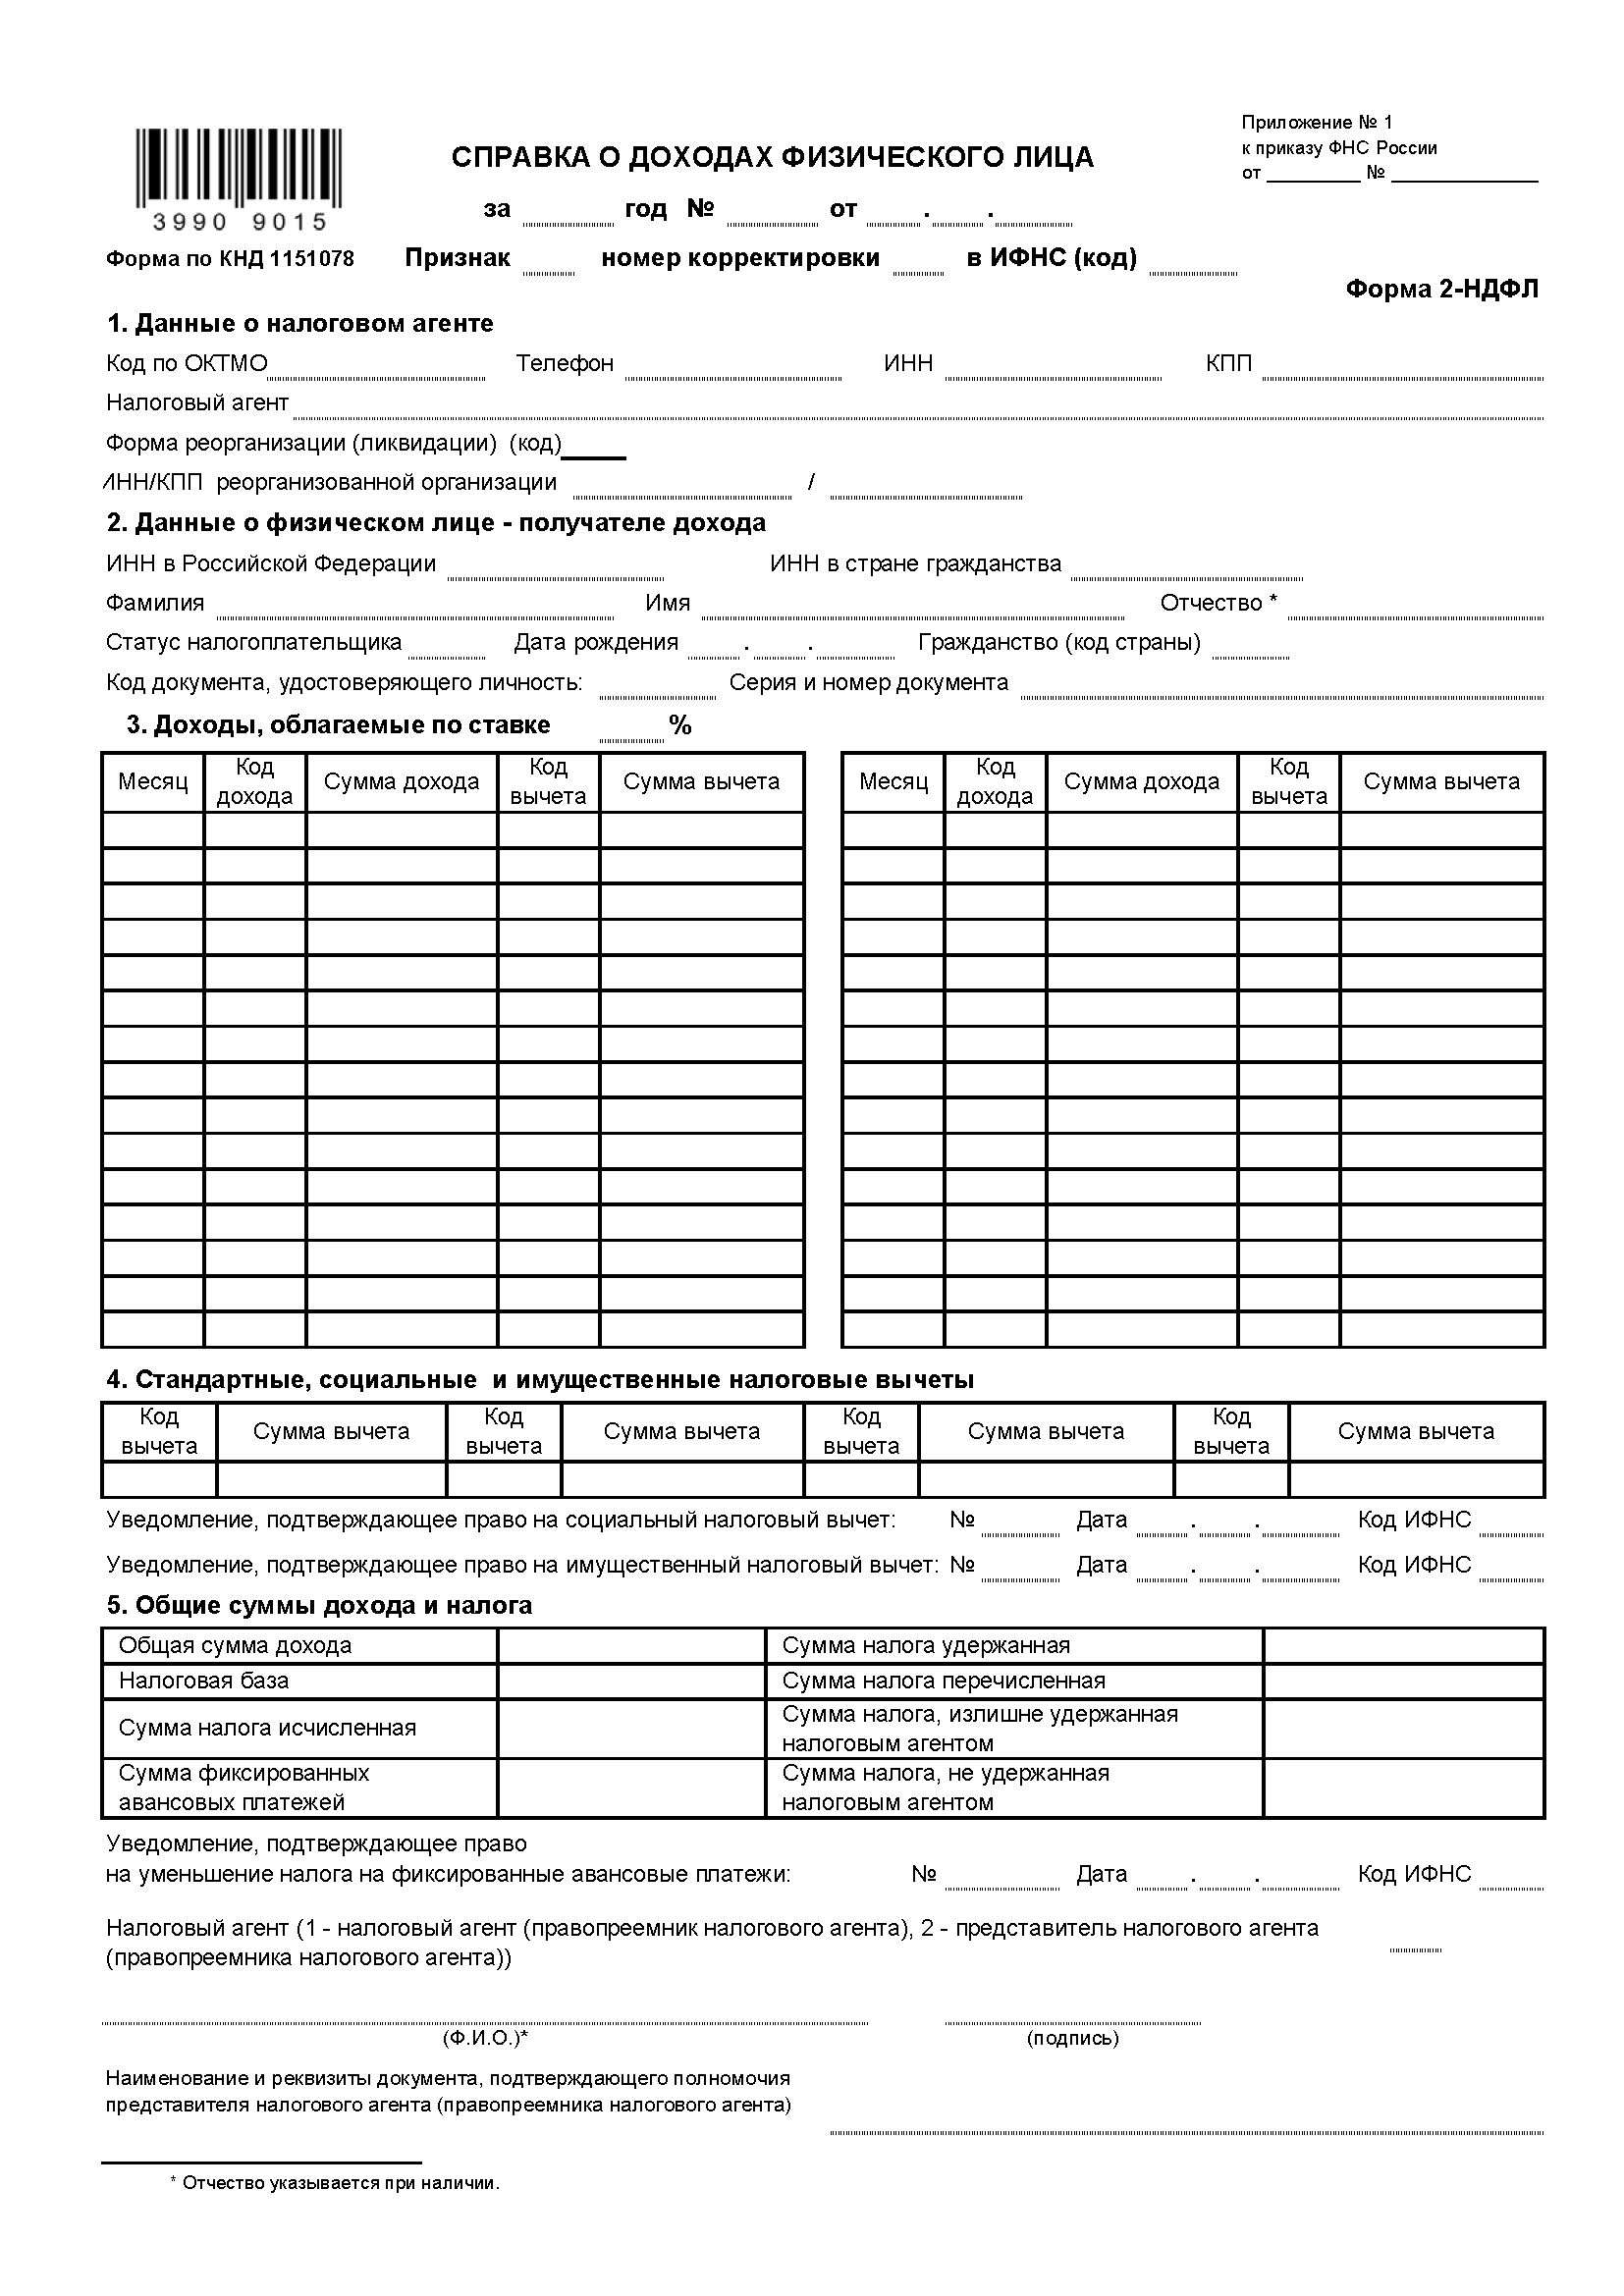 Командировочное удостоверение бланк скачать казахстан 2018